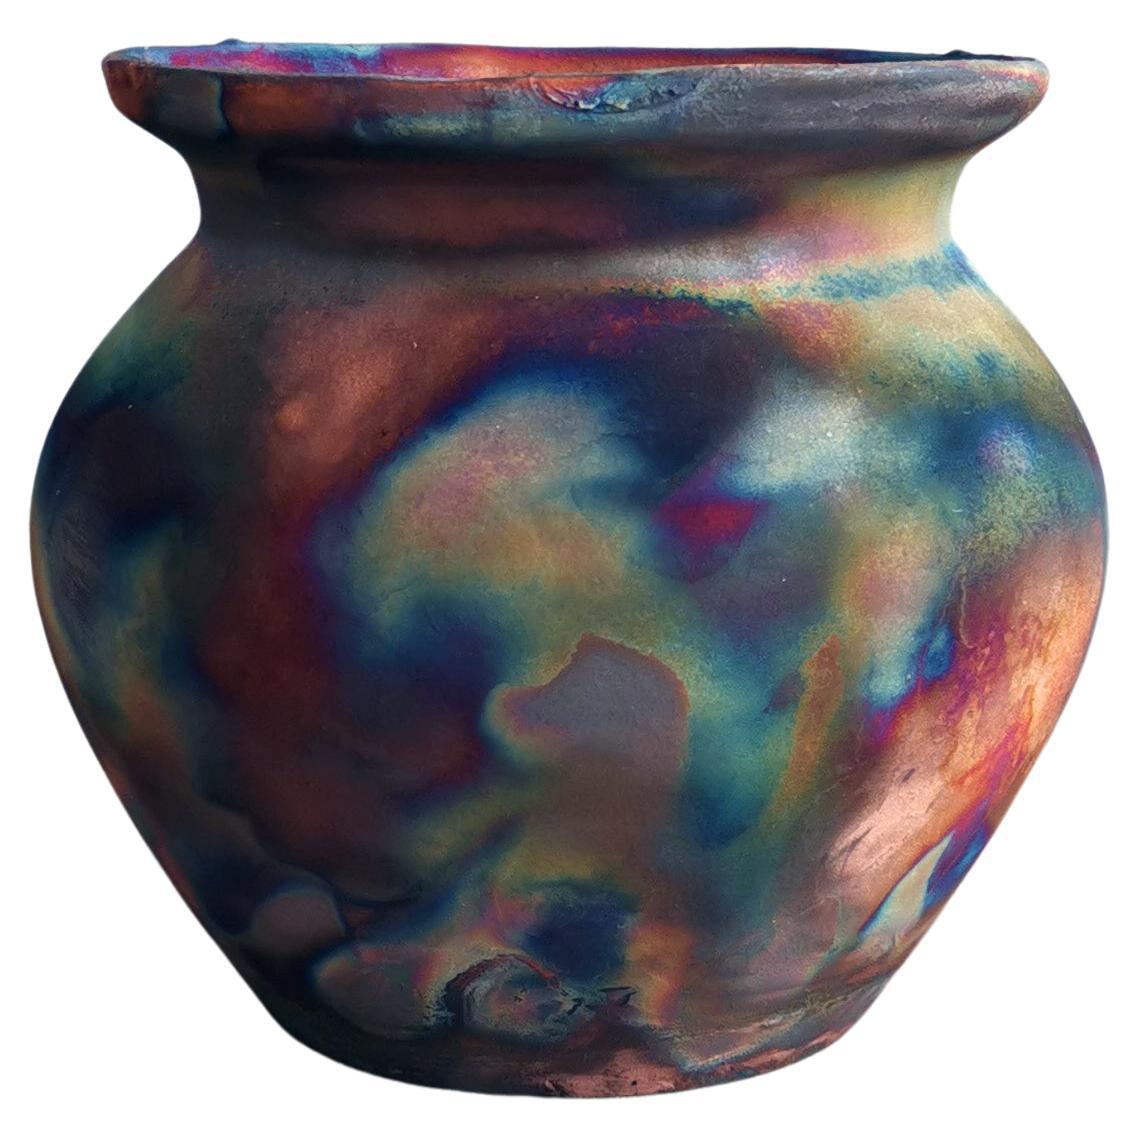 Hofu Raku Ceramic Vase - Full Copper Matte - Handmade Pottery Home Decor Gift For Sale